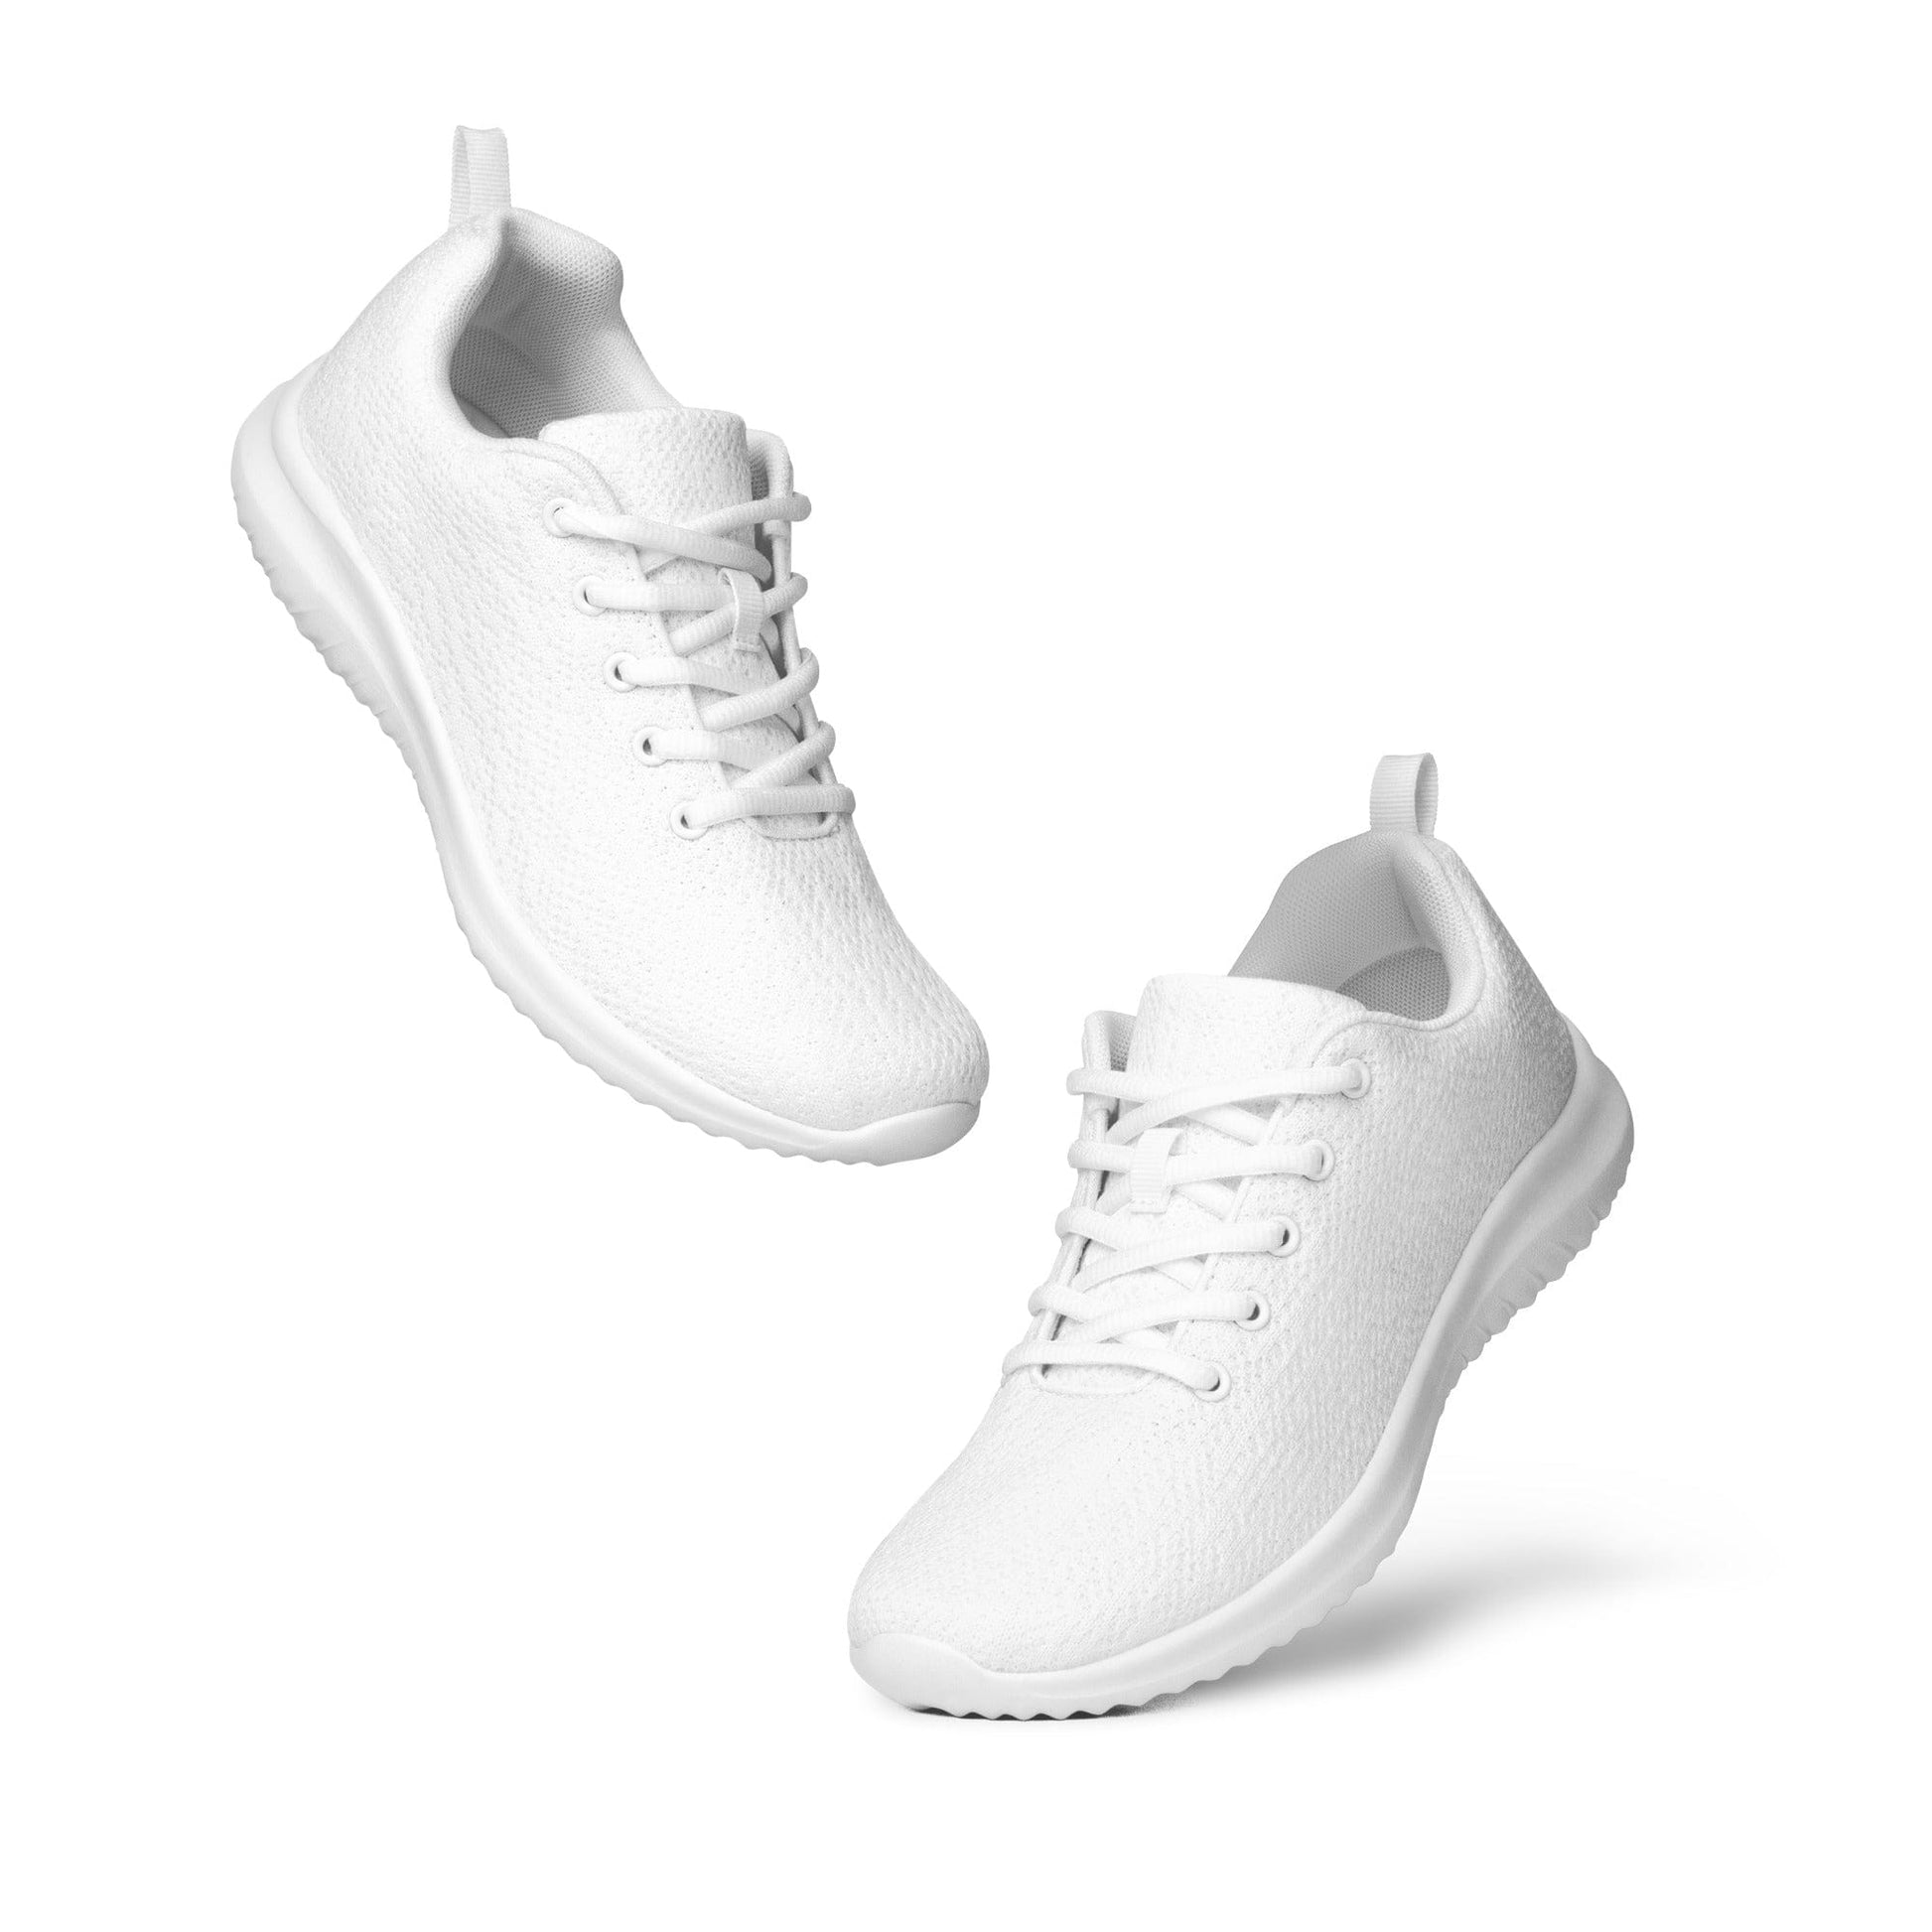 Athletic Shoes White YangAthletic Shoes1443563_16385